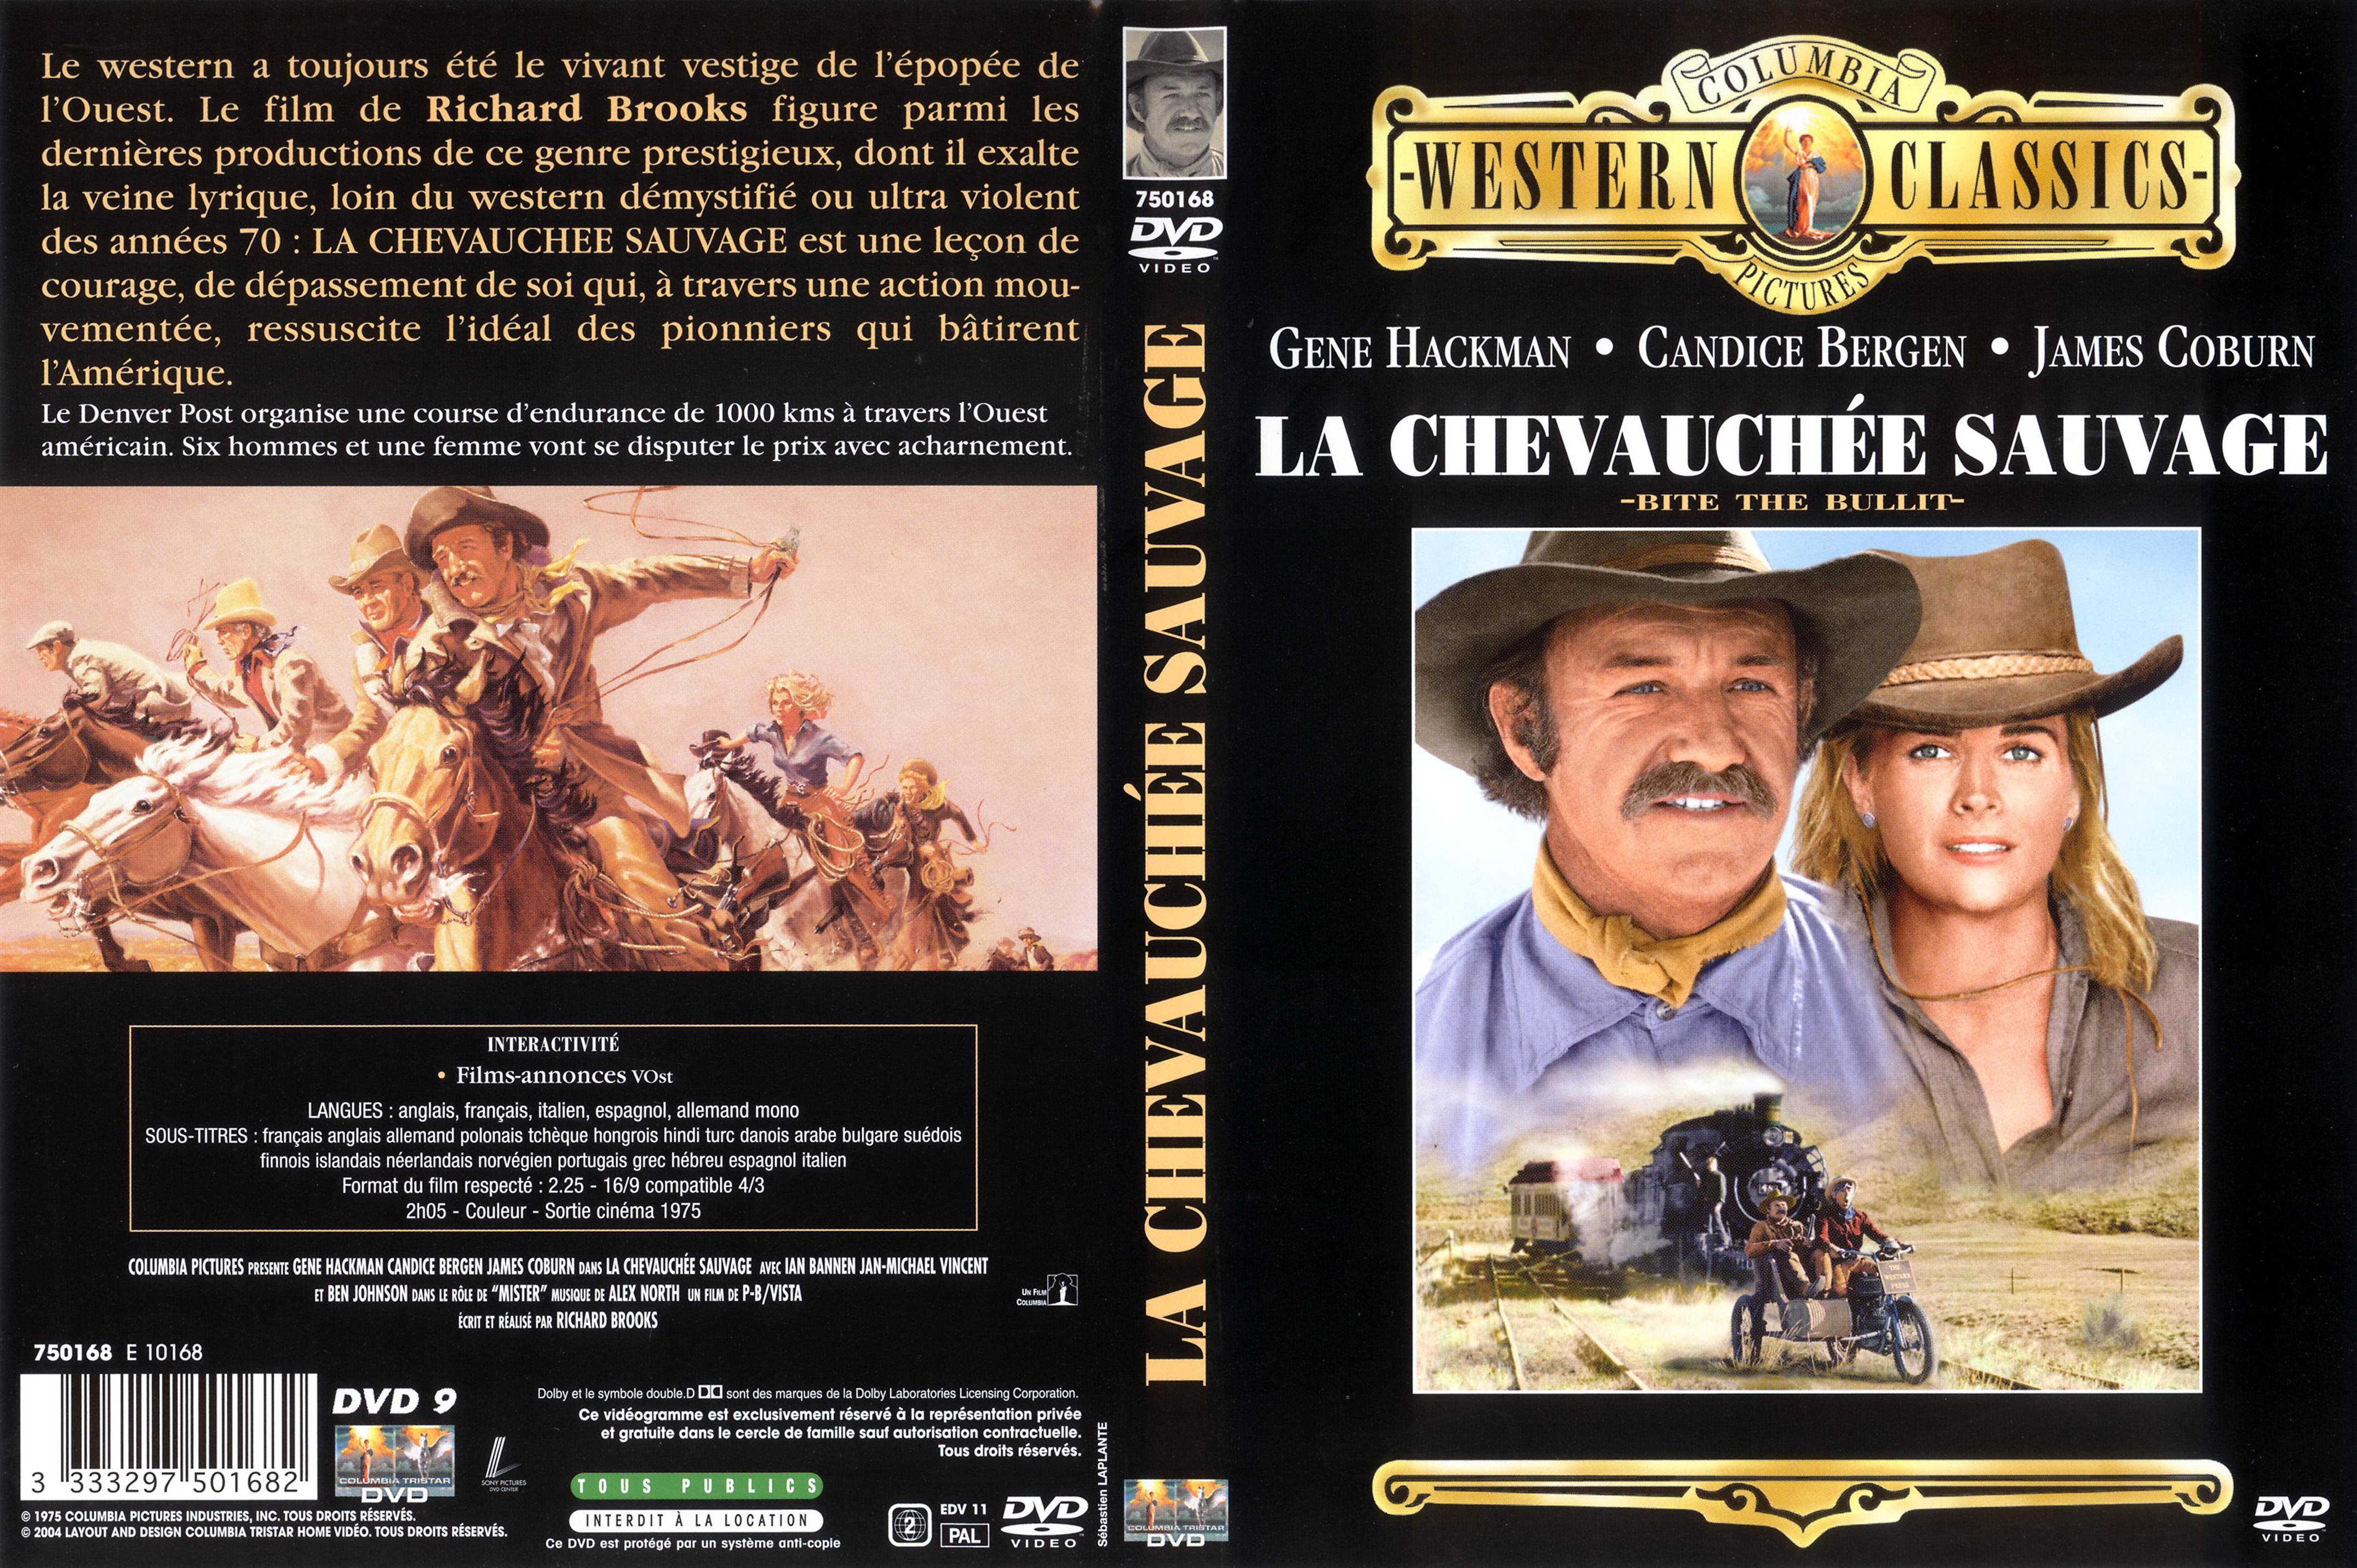 Jaquette DVD La chevauche sauvage v2